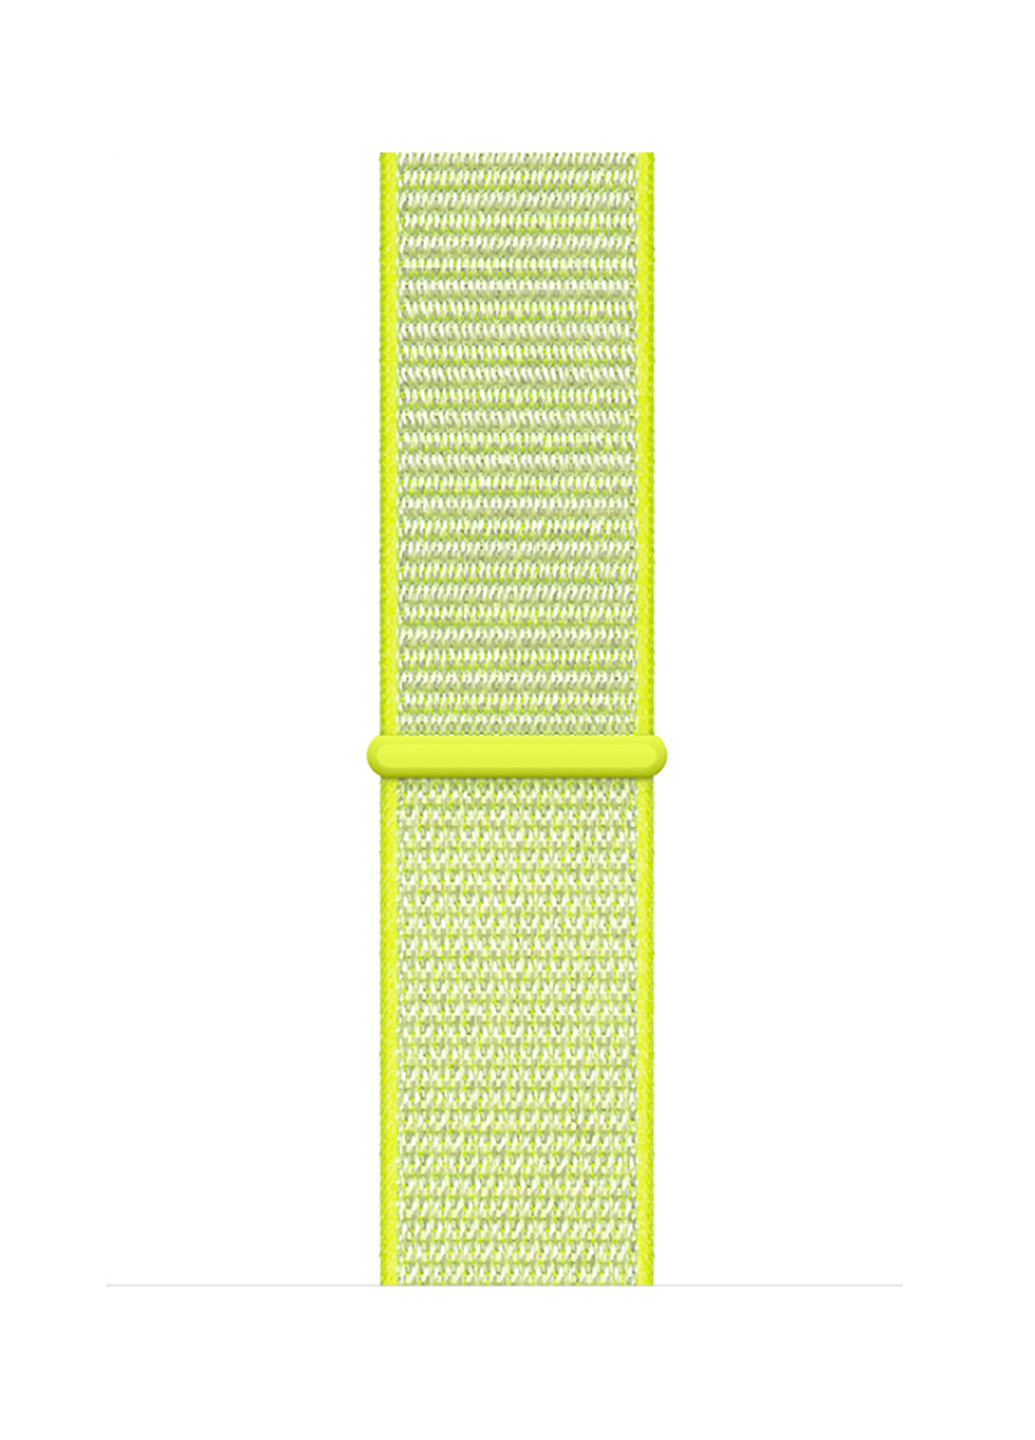 Ремінець для смарт-годин для Apple Watch 42/44 Series 1,2,3 Нейлоновий Yellow XoKo для apple watch 42/44 series 1,2,3 нейлоновый yellow (156223609)